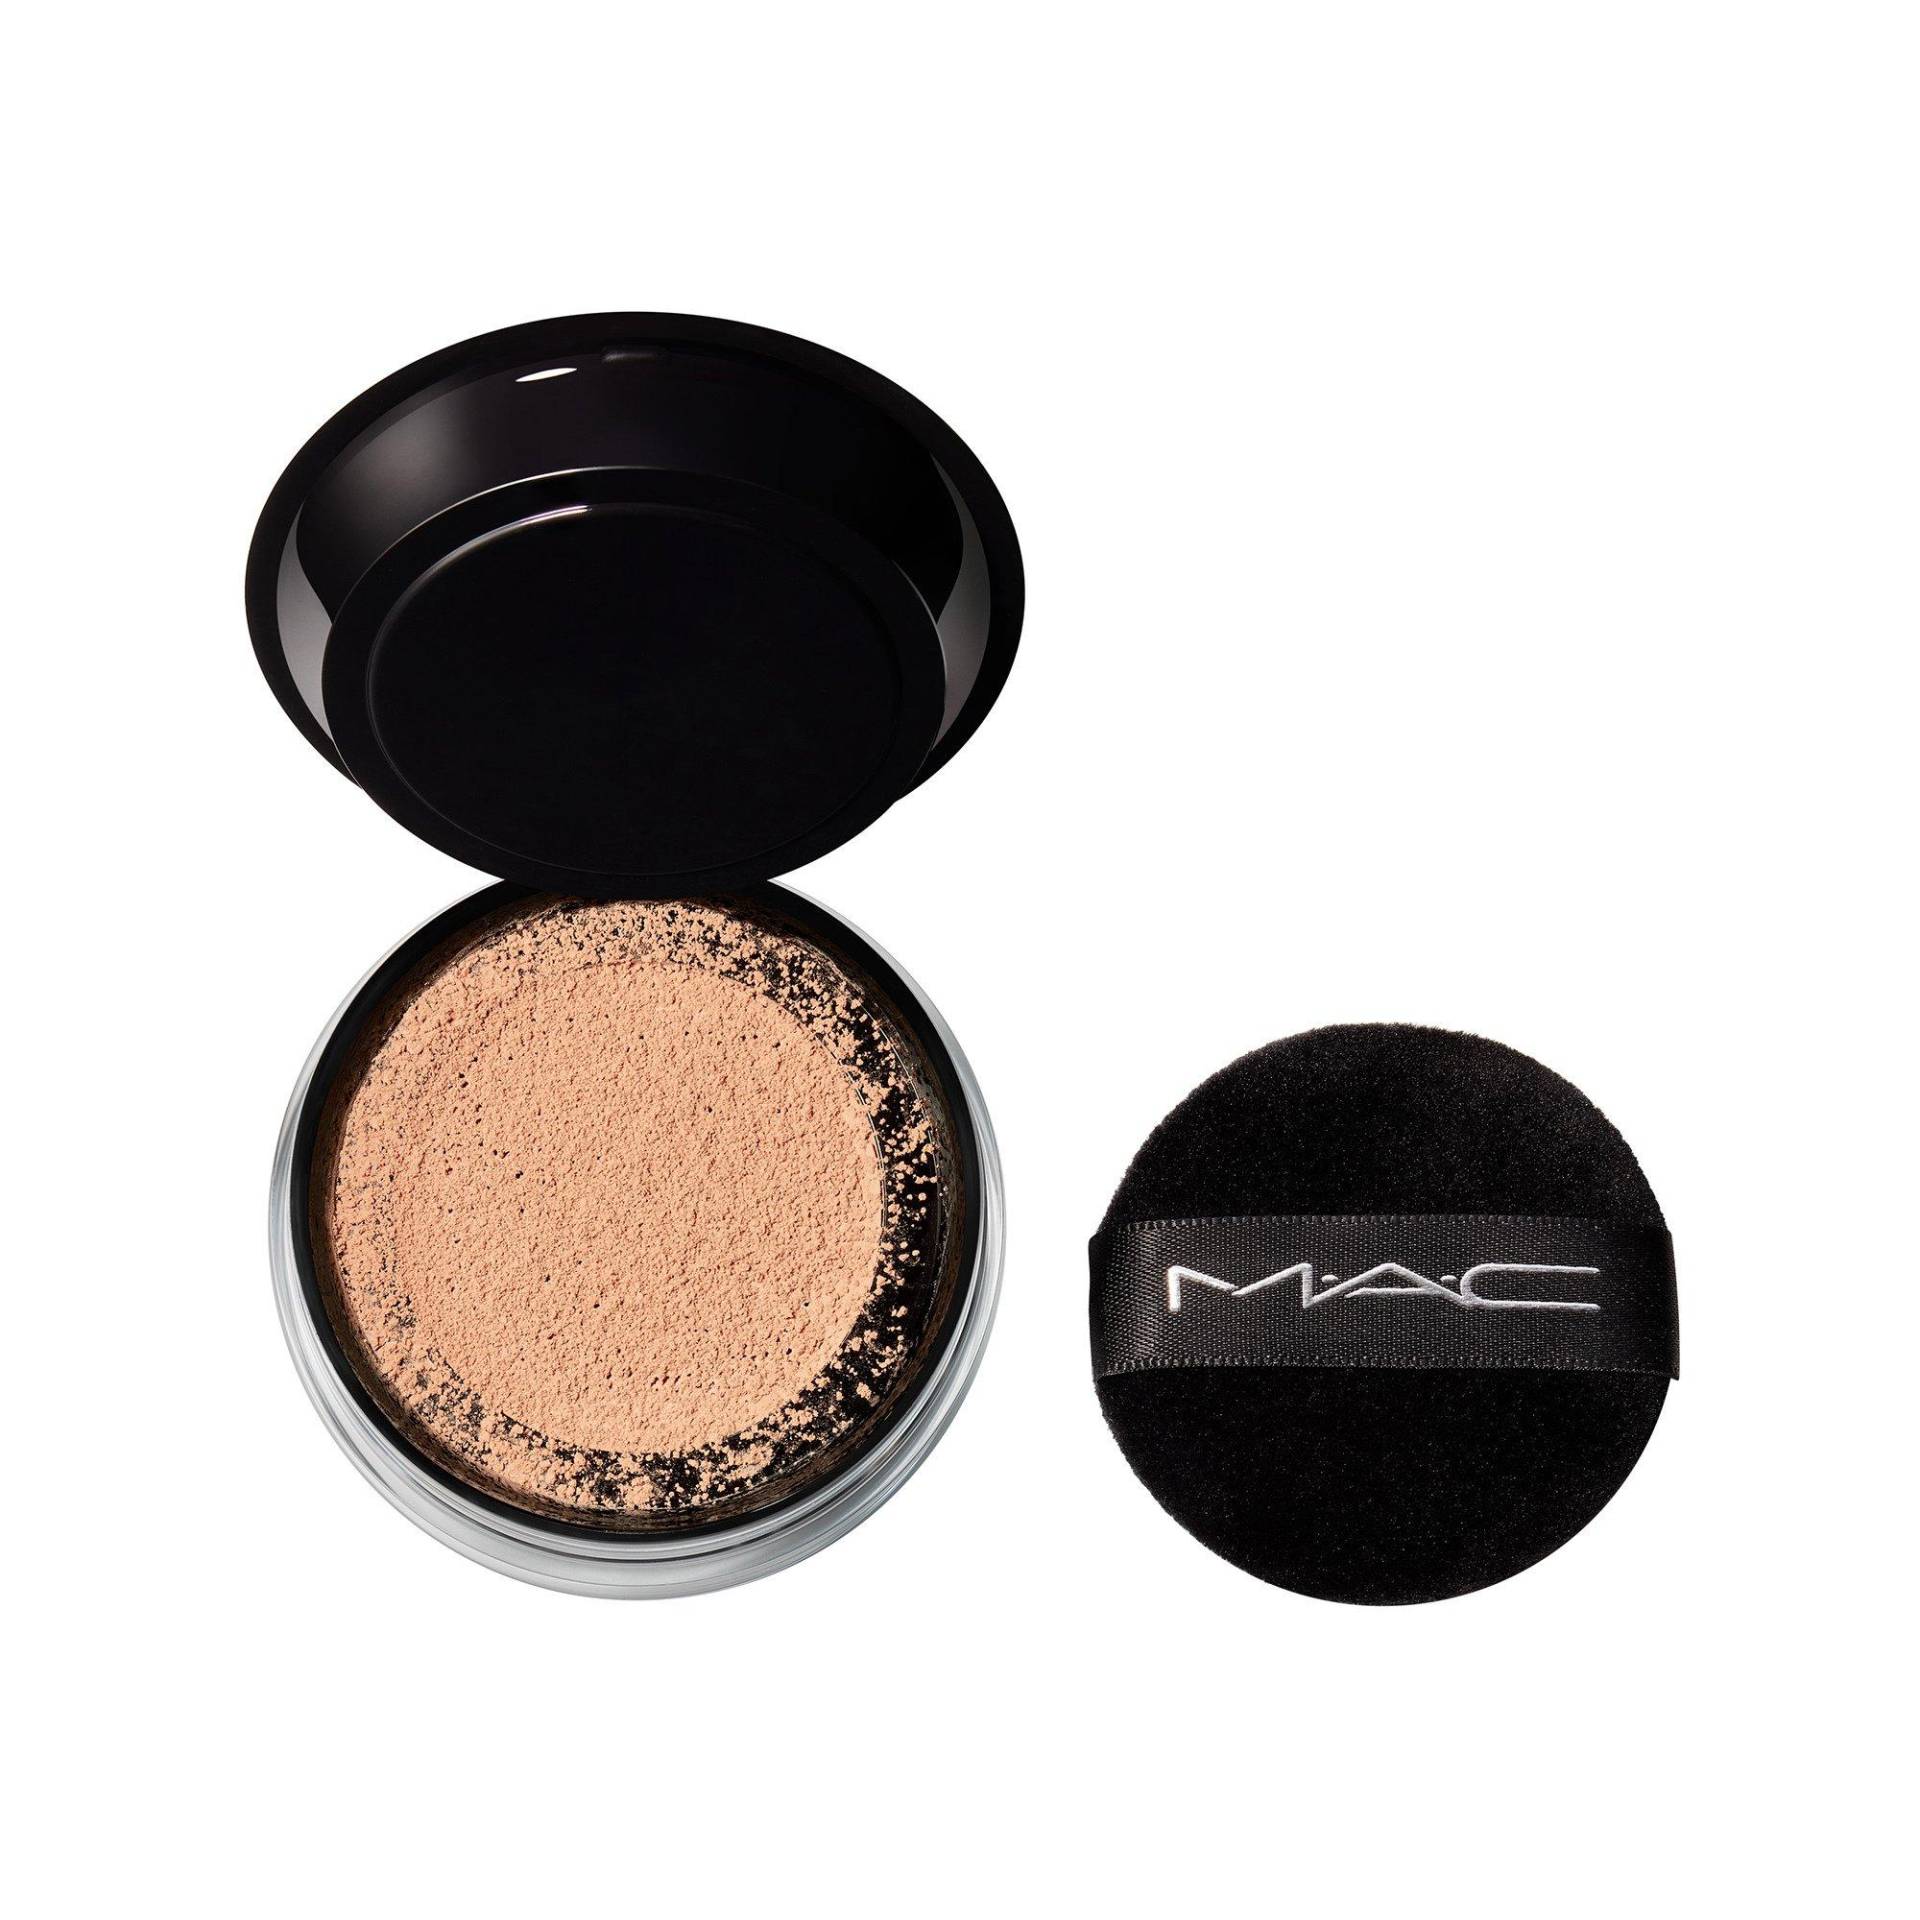 Studio Fix Weightless Loose Powder Damen Medium 6.5g von MAC Cosmetics